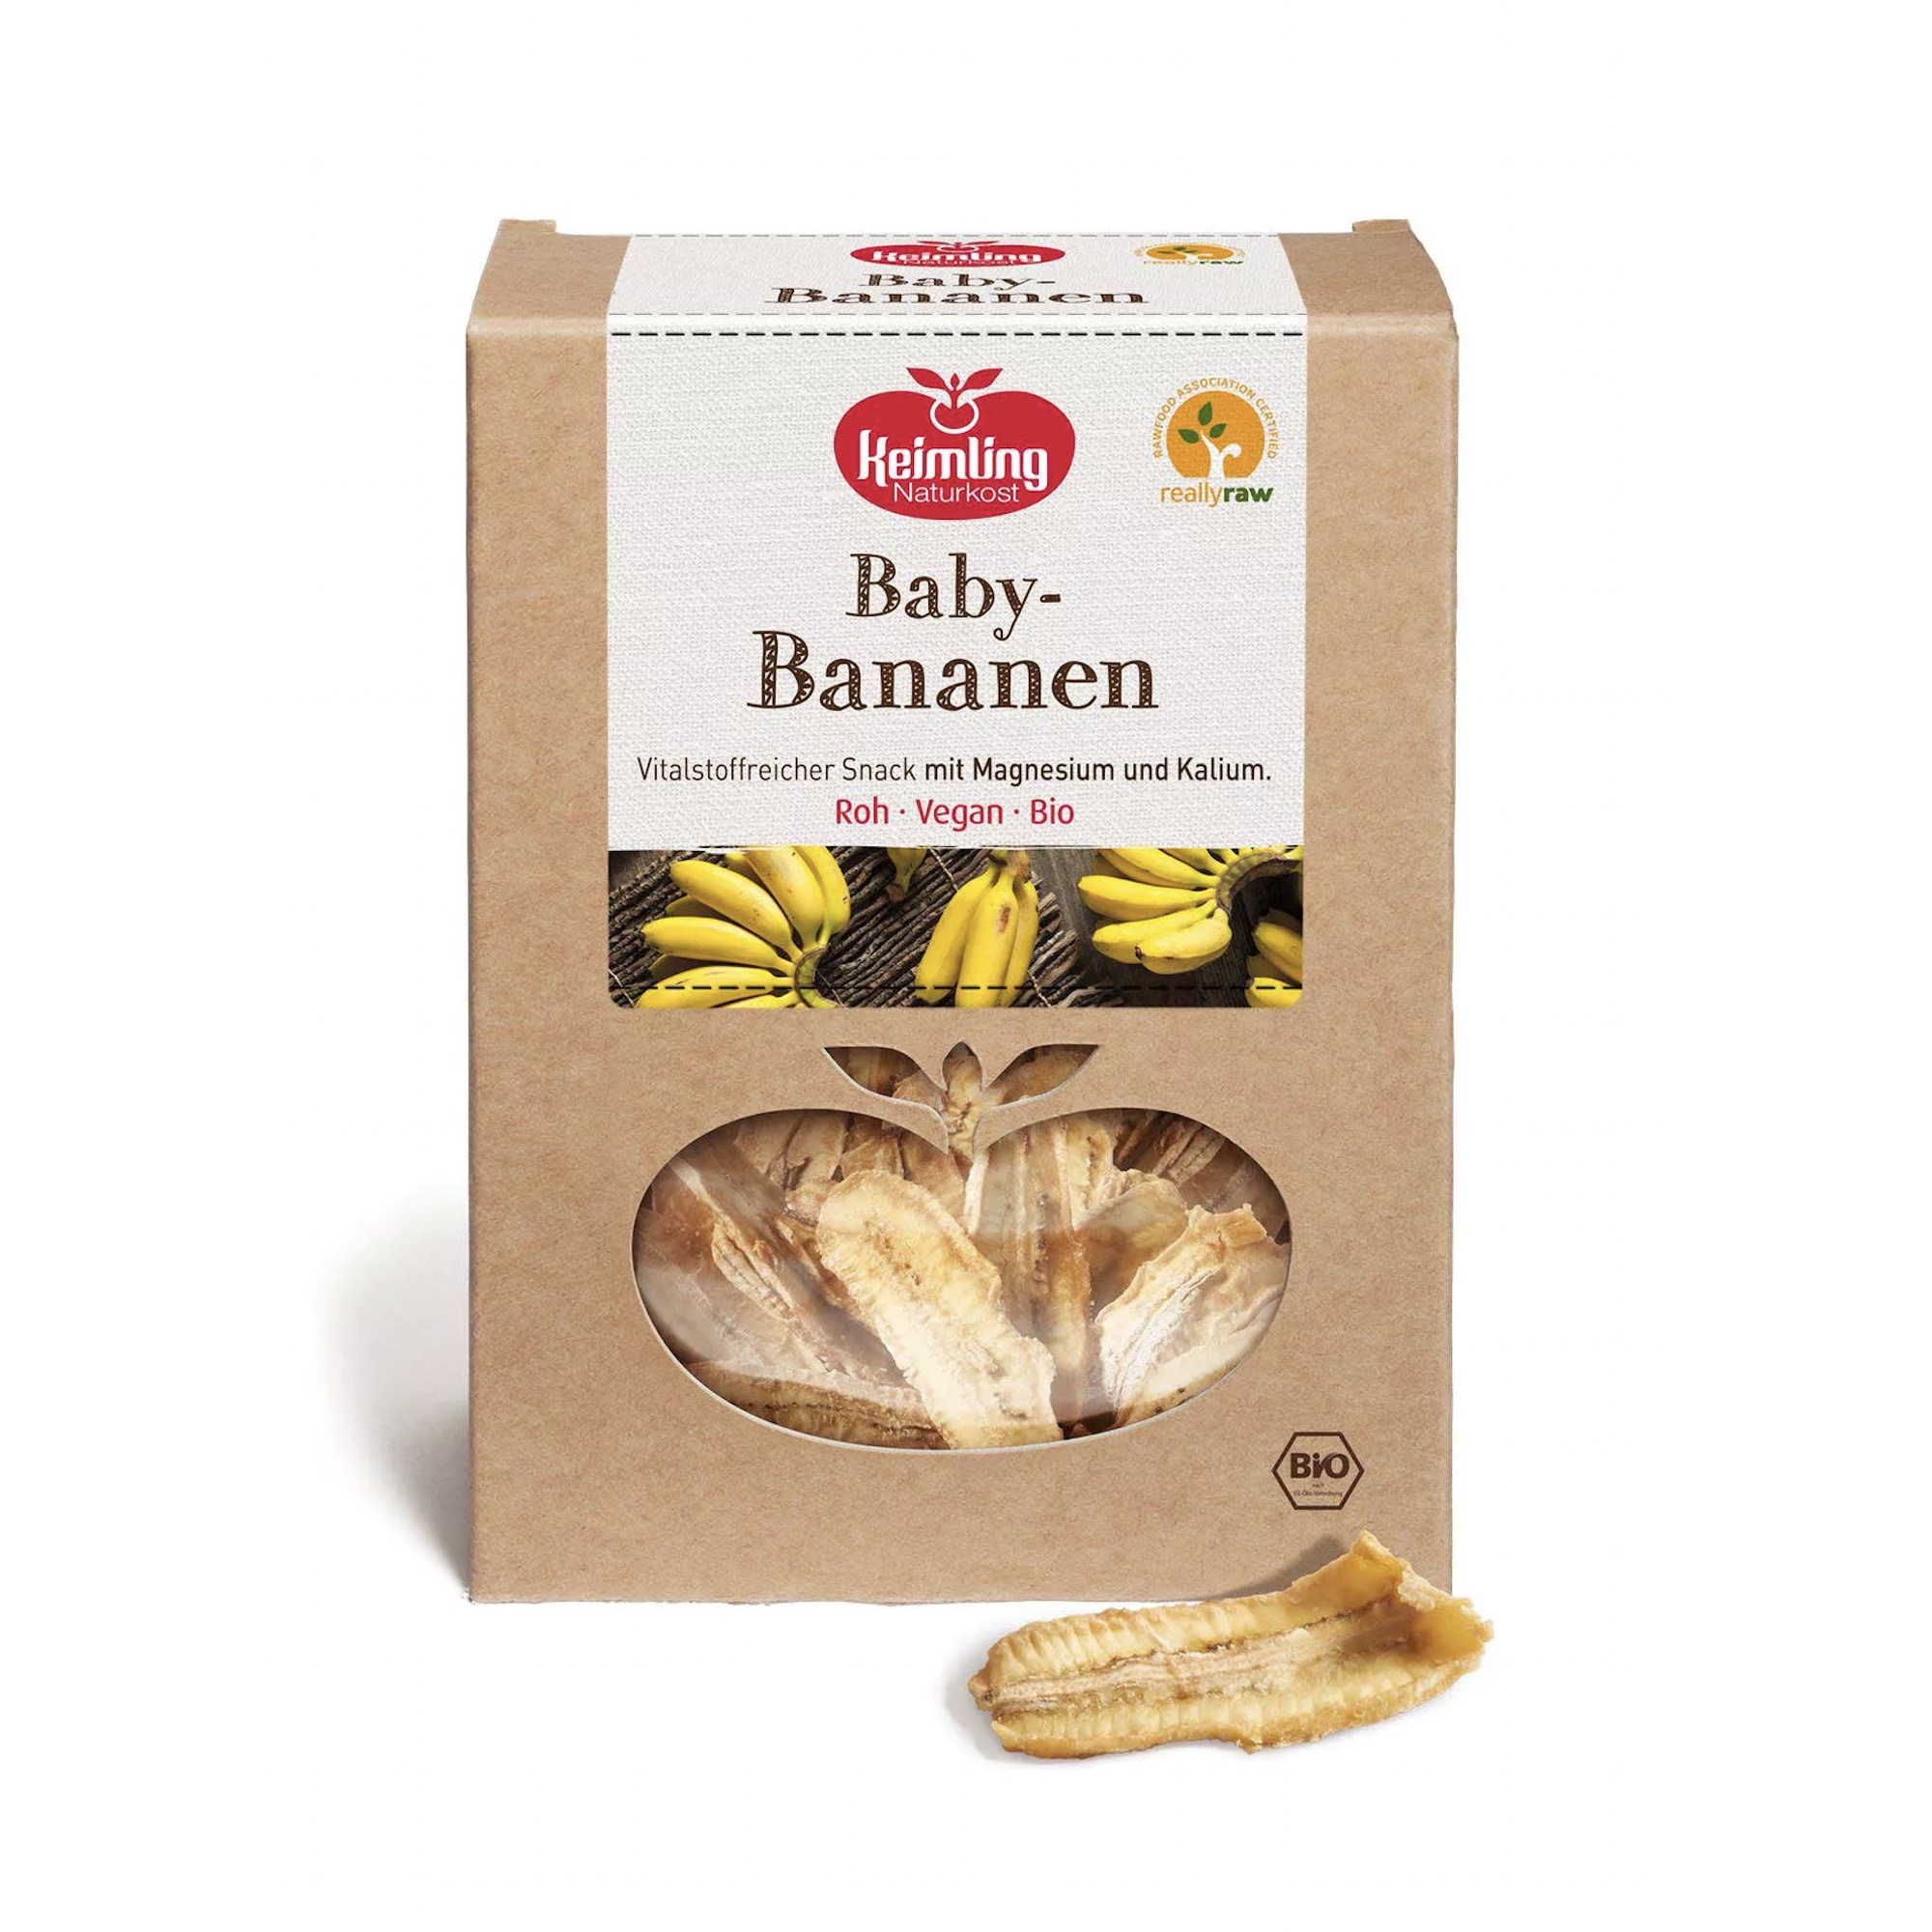 Baby Bananen von Keimling Naturkost.